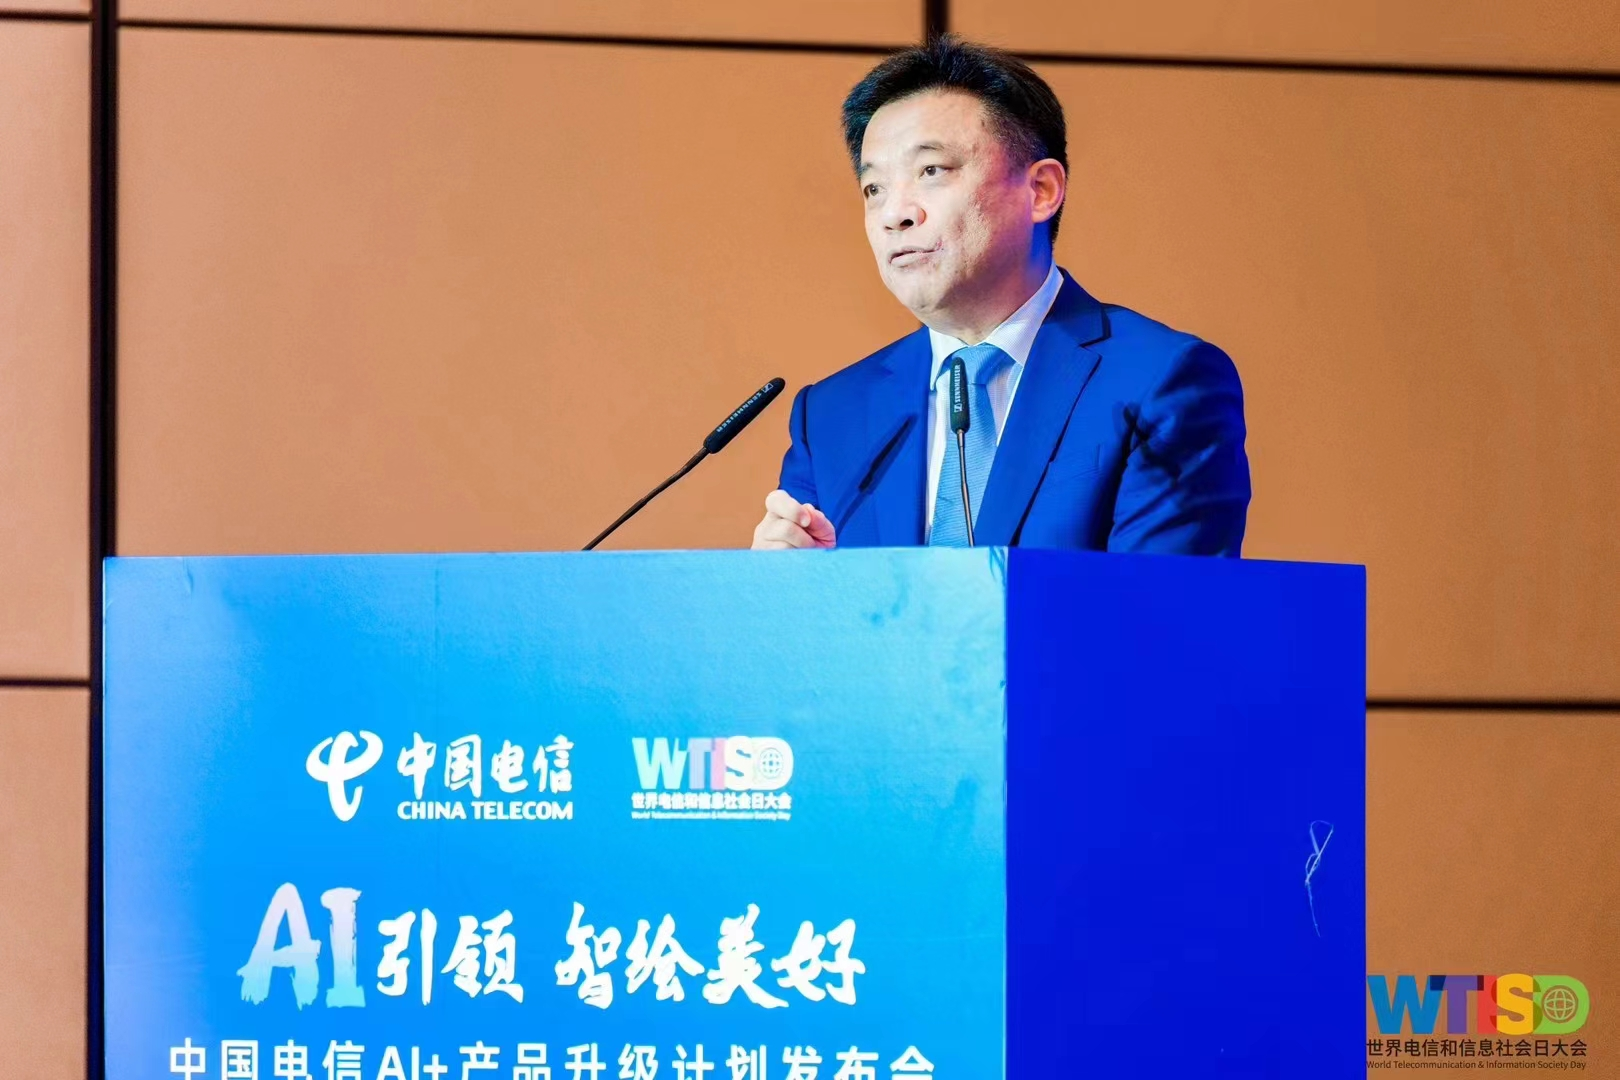 AI引领  智绘美好  中国电信AI+产品升级计划发布会在宁波成功举办